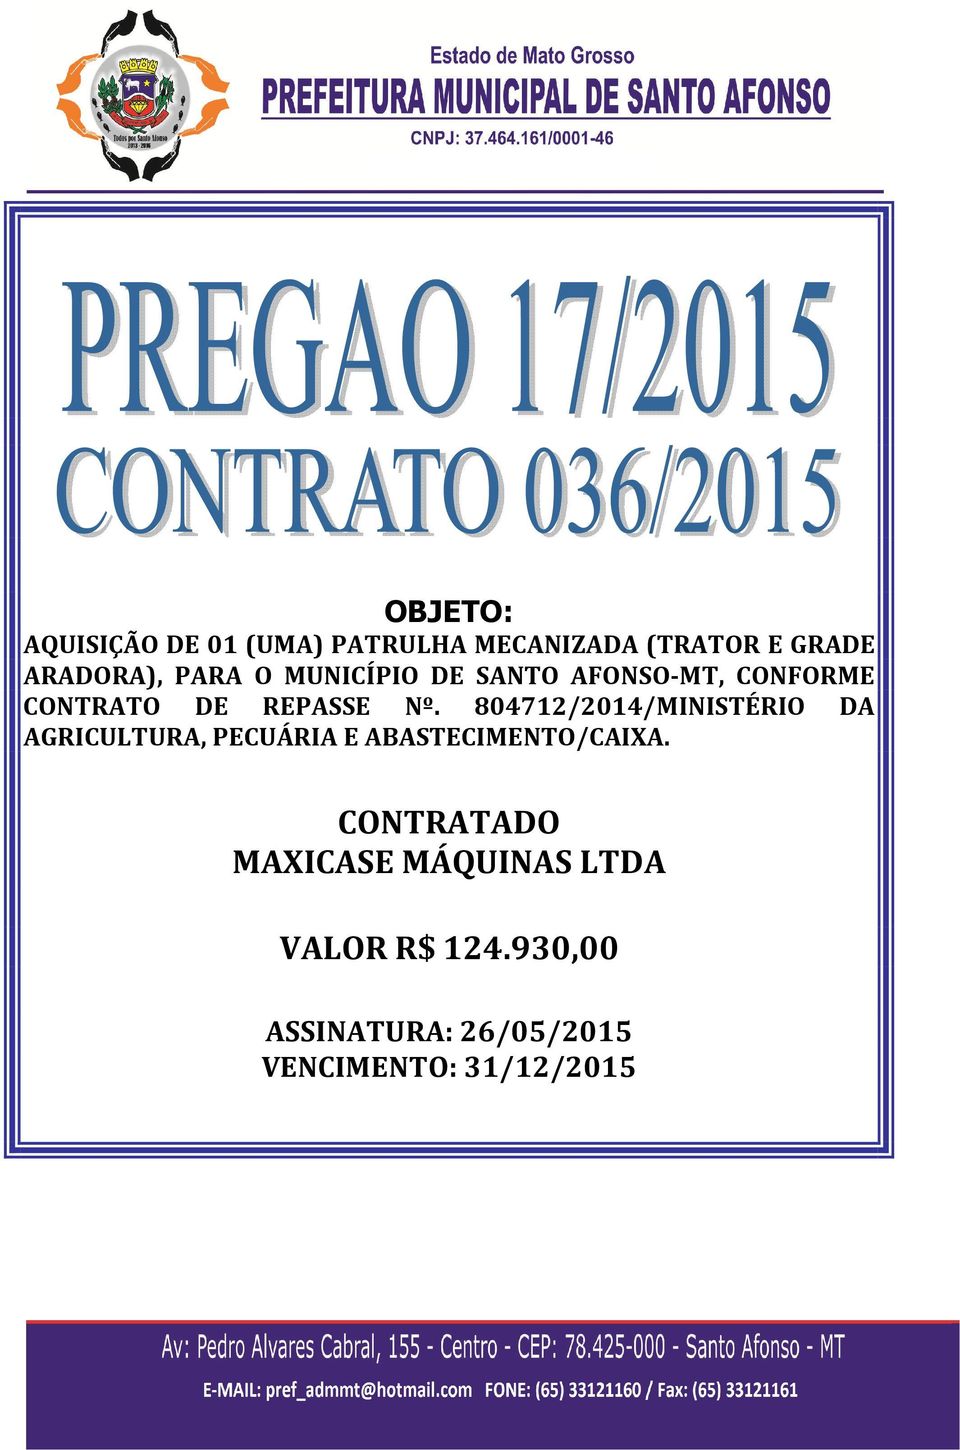 804712/2014/MINISTÉRIO DA AGRICULTURA, PECUÁRIA E ABASTECIMENTO/CAIXA.